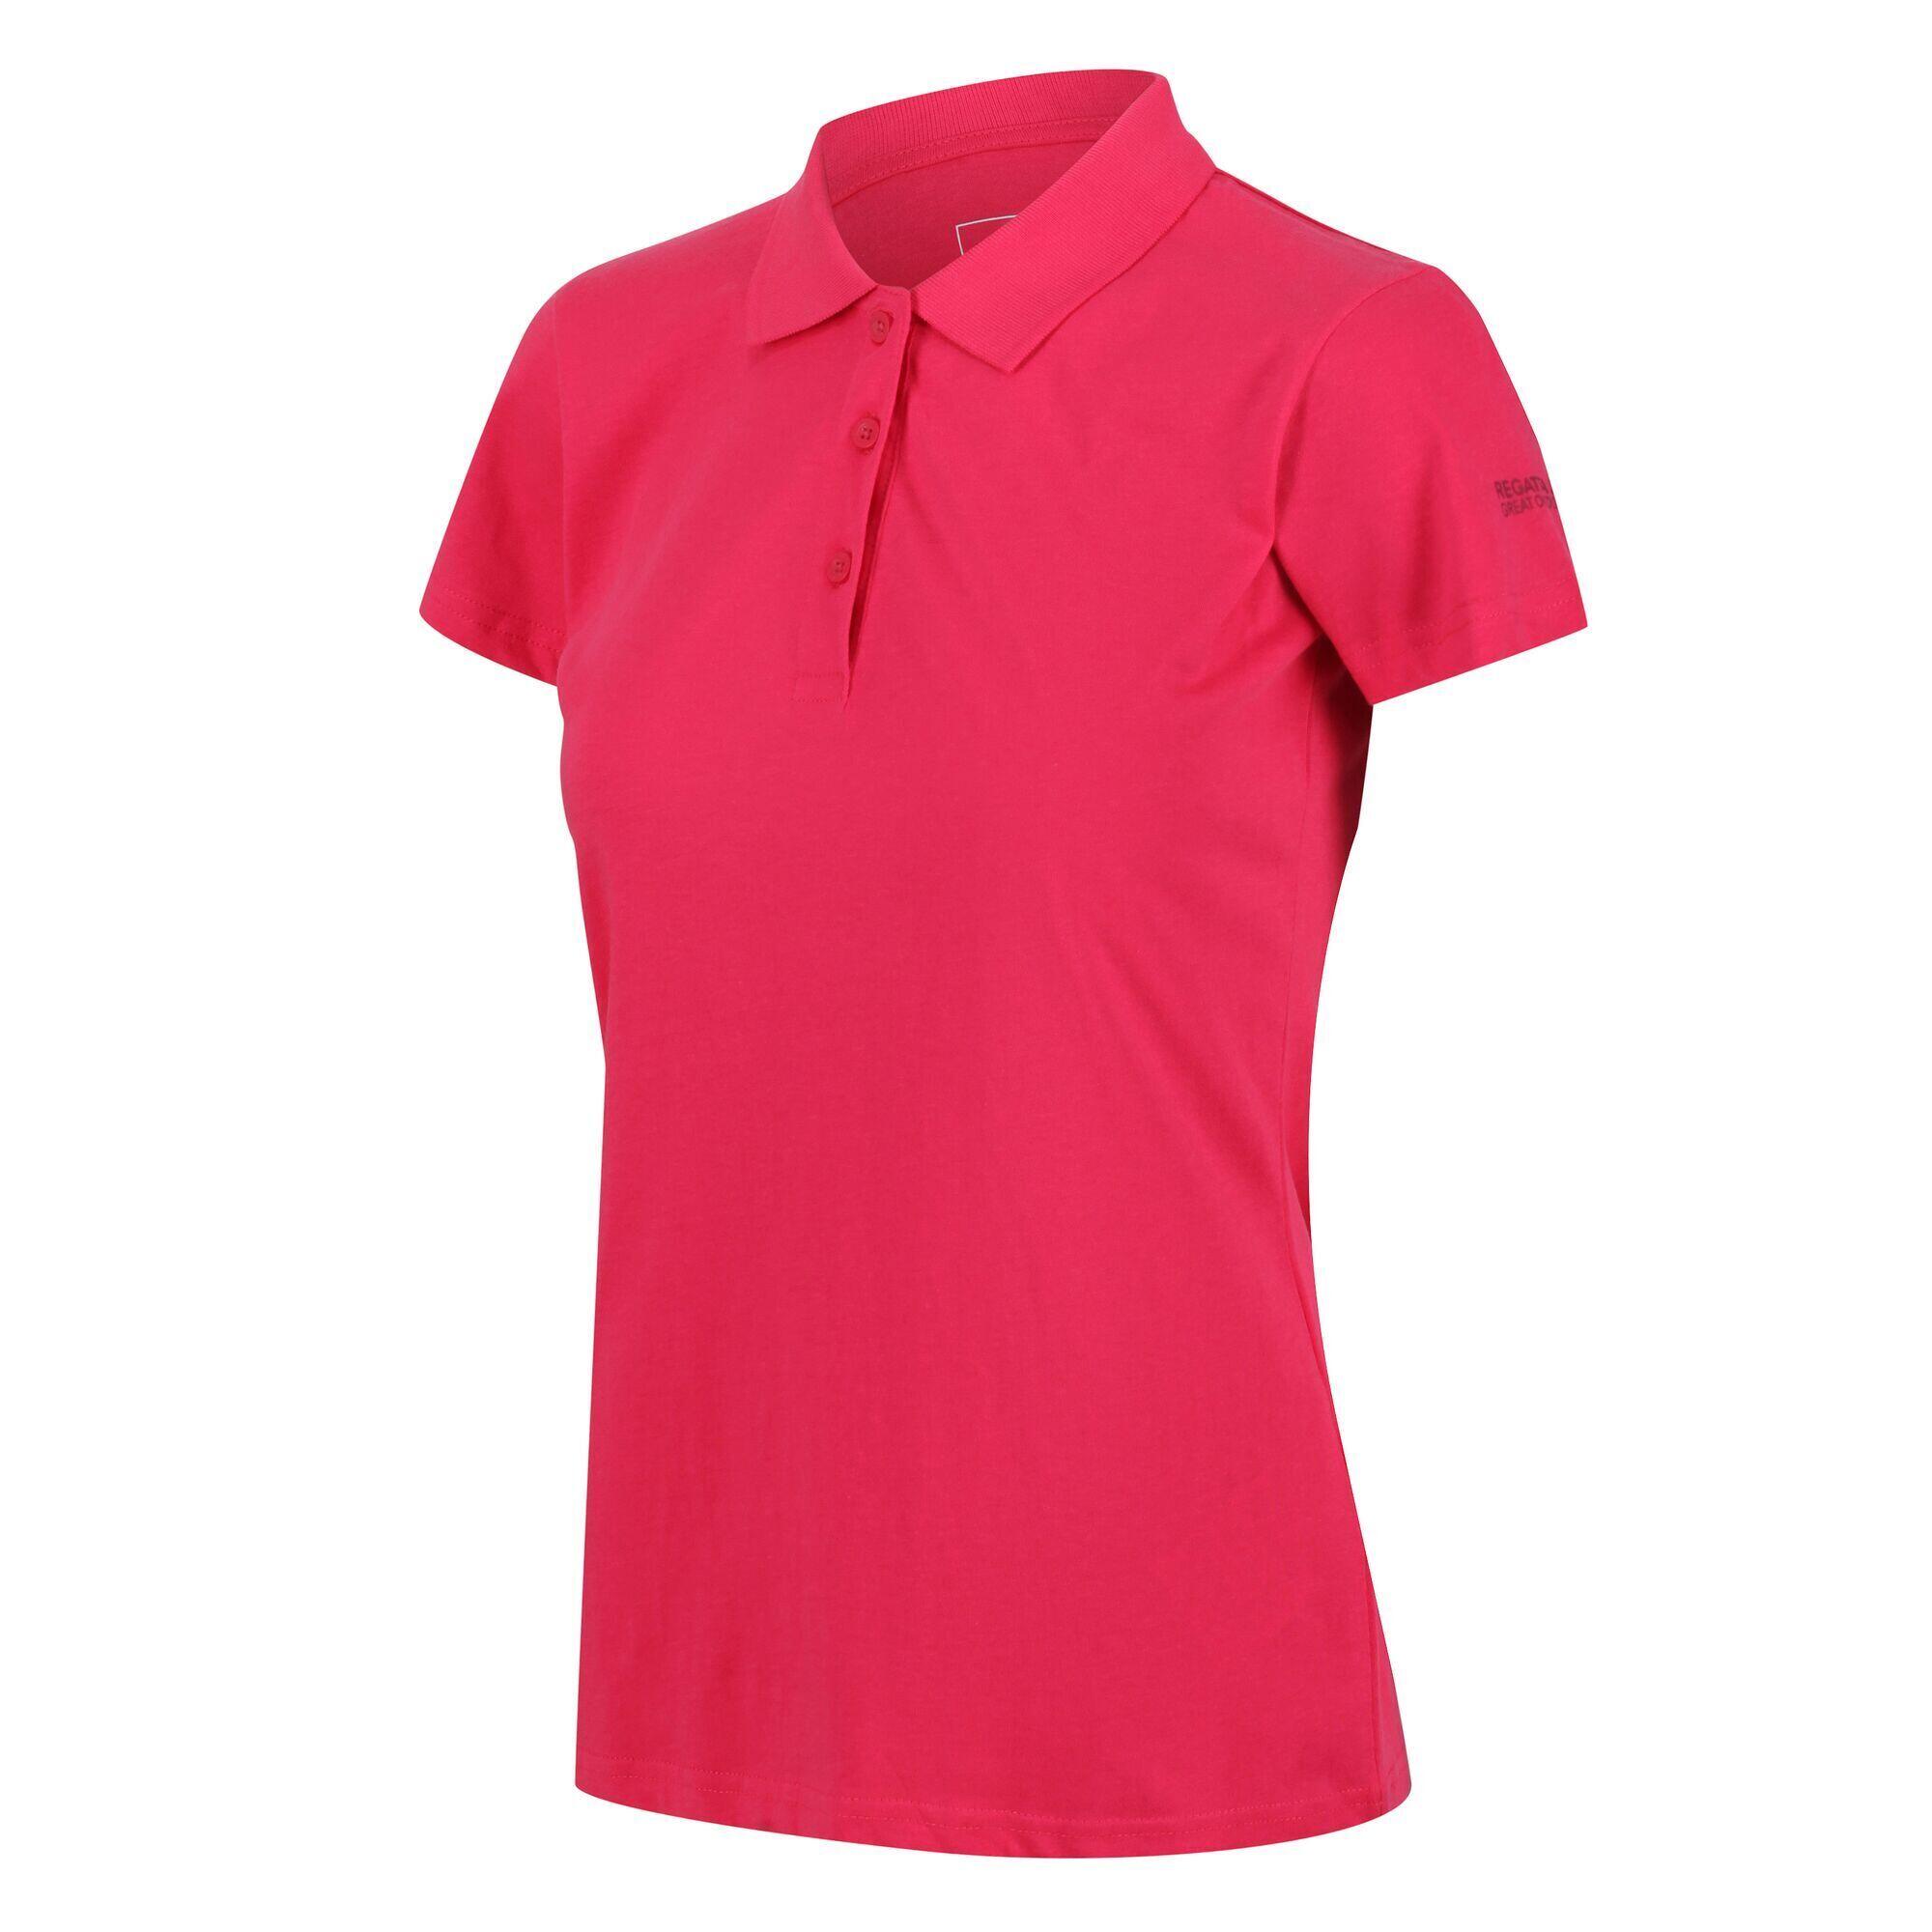 Womens/Ladies Sinton Polo Shirt (Rethink Pink) 3/4